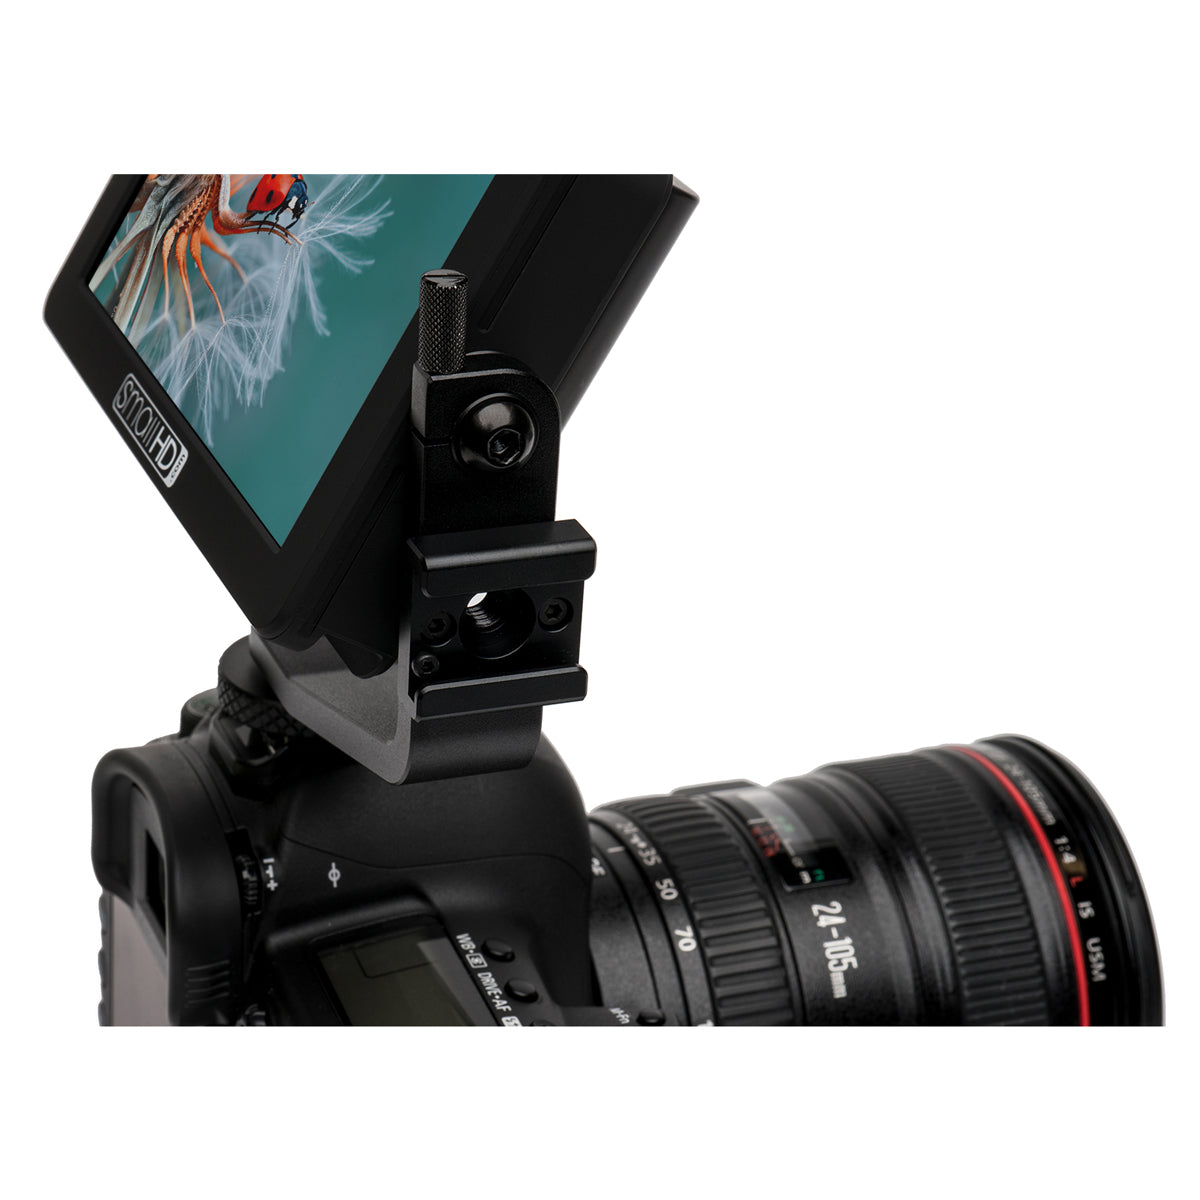 SmallHD FOCUS 5” Touchscreen with Canon LP-E6 Bundle